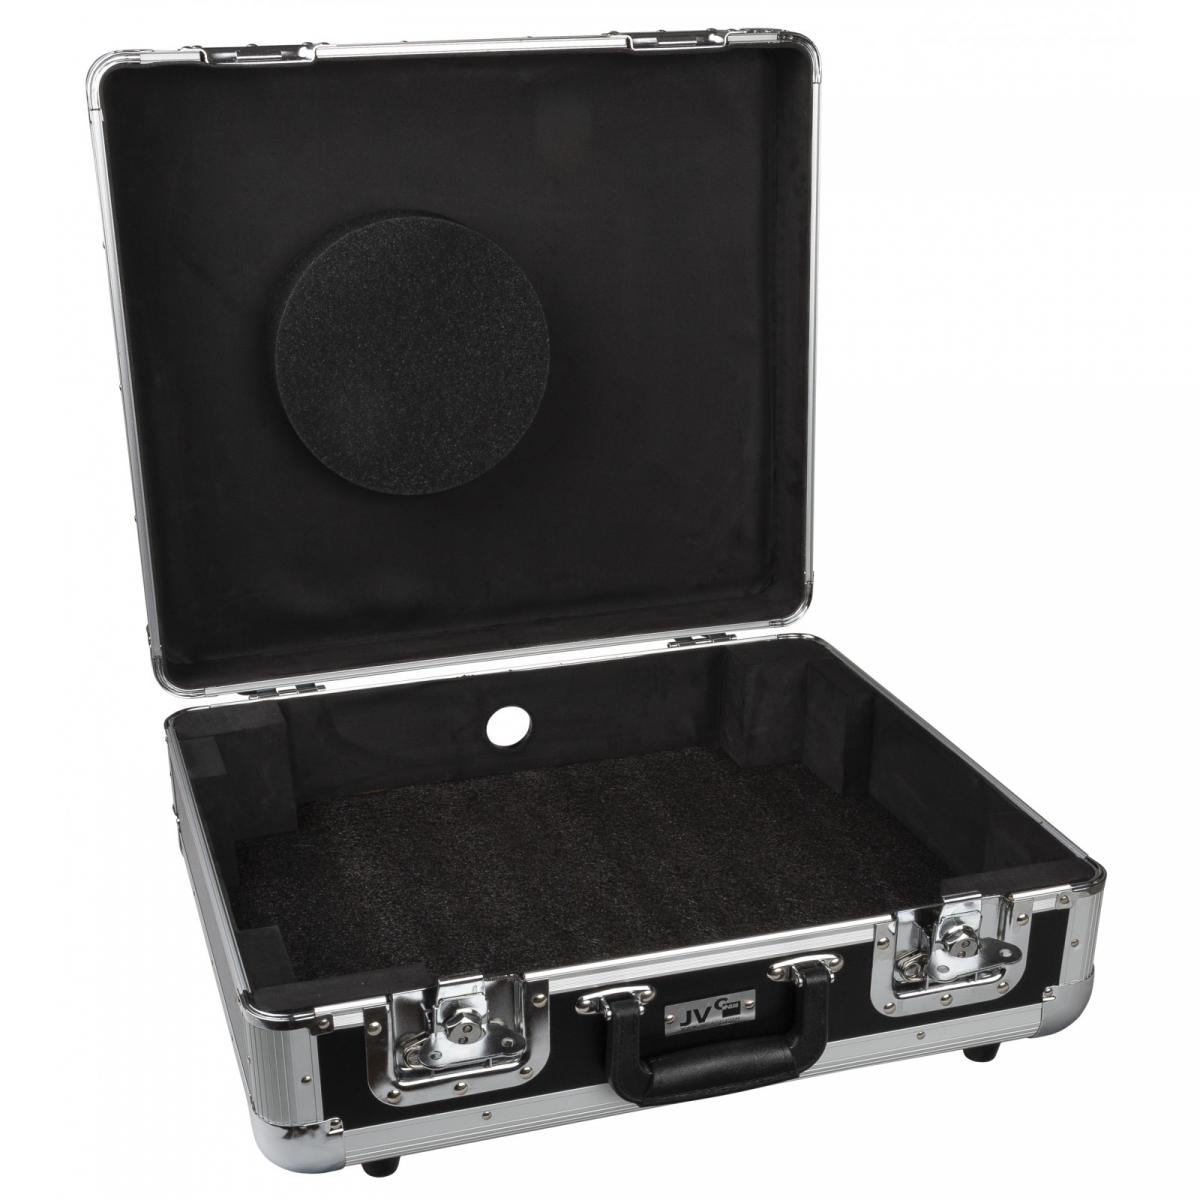 JV Case TT-Case Flightcase für Plattenspieler